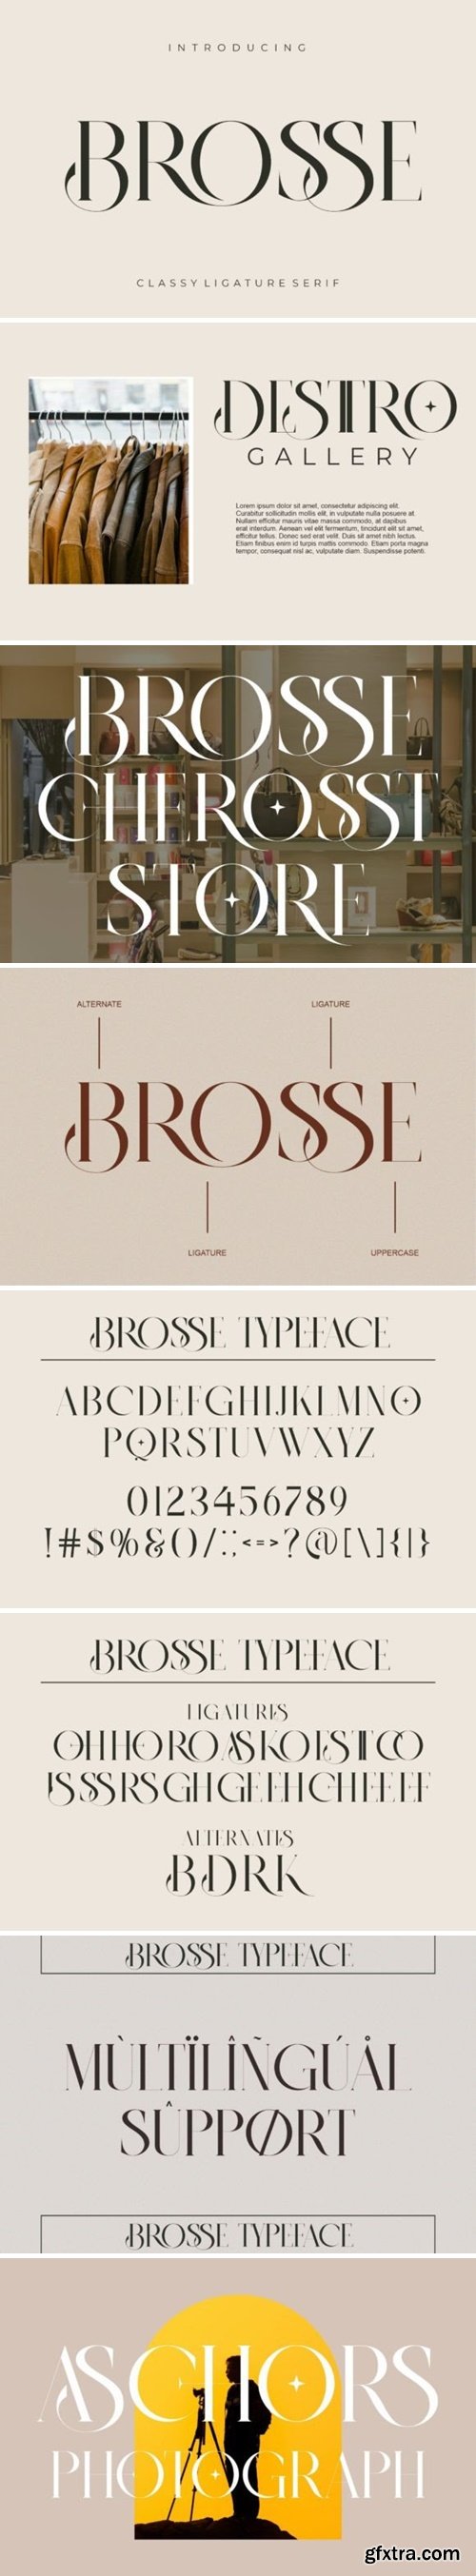 CM - BROSSE Classy Ligature Serif 137203306